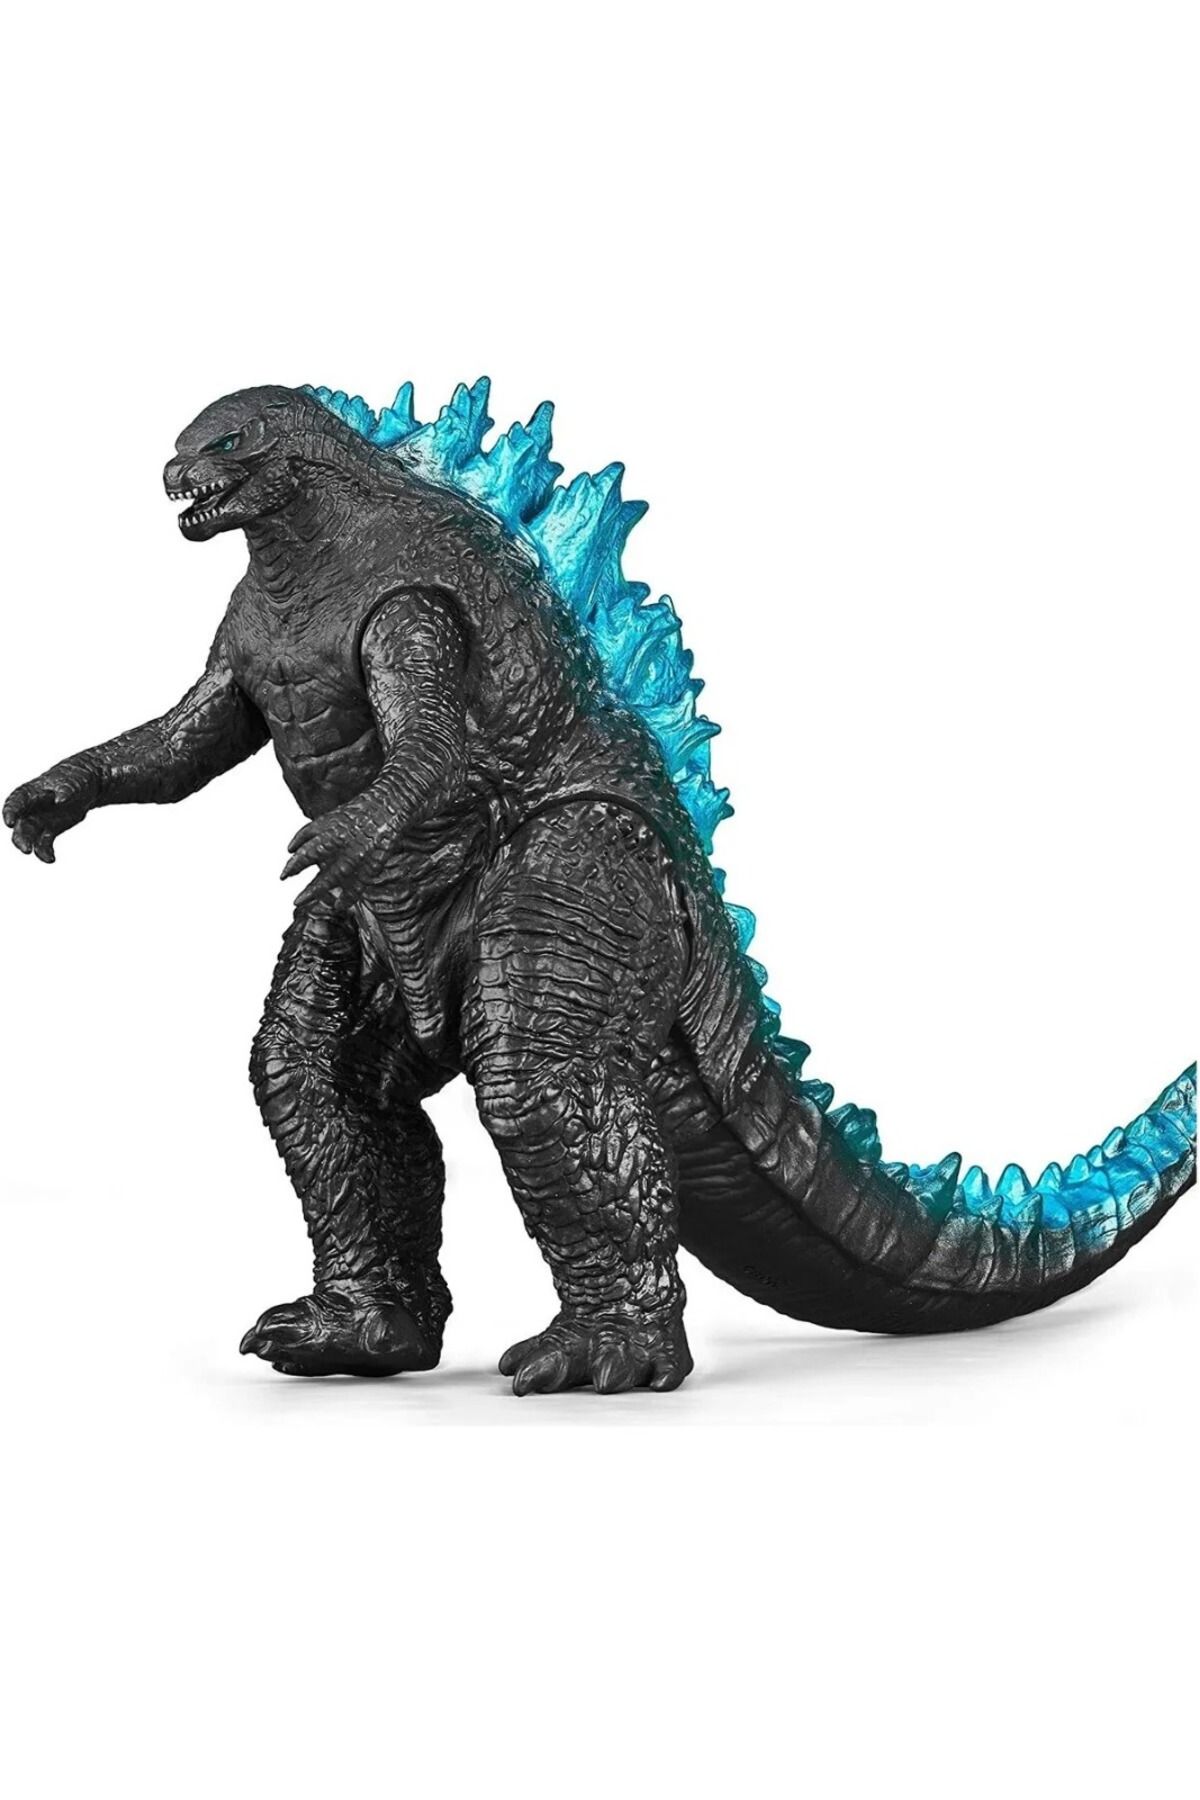 KİNKU Godzilla 25 Cm Sesli Soft Dinozor Aksiyon Figürü Dinazor GODZİLLA25CM